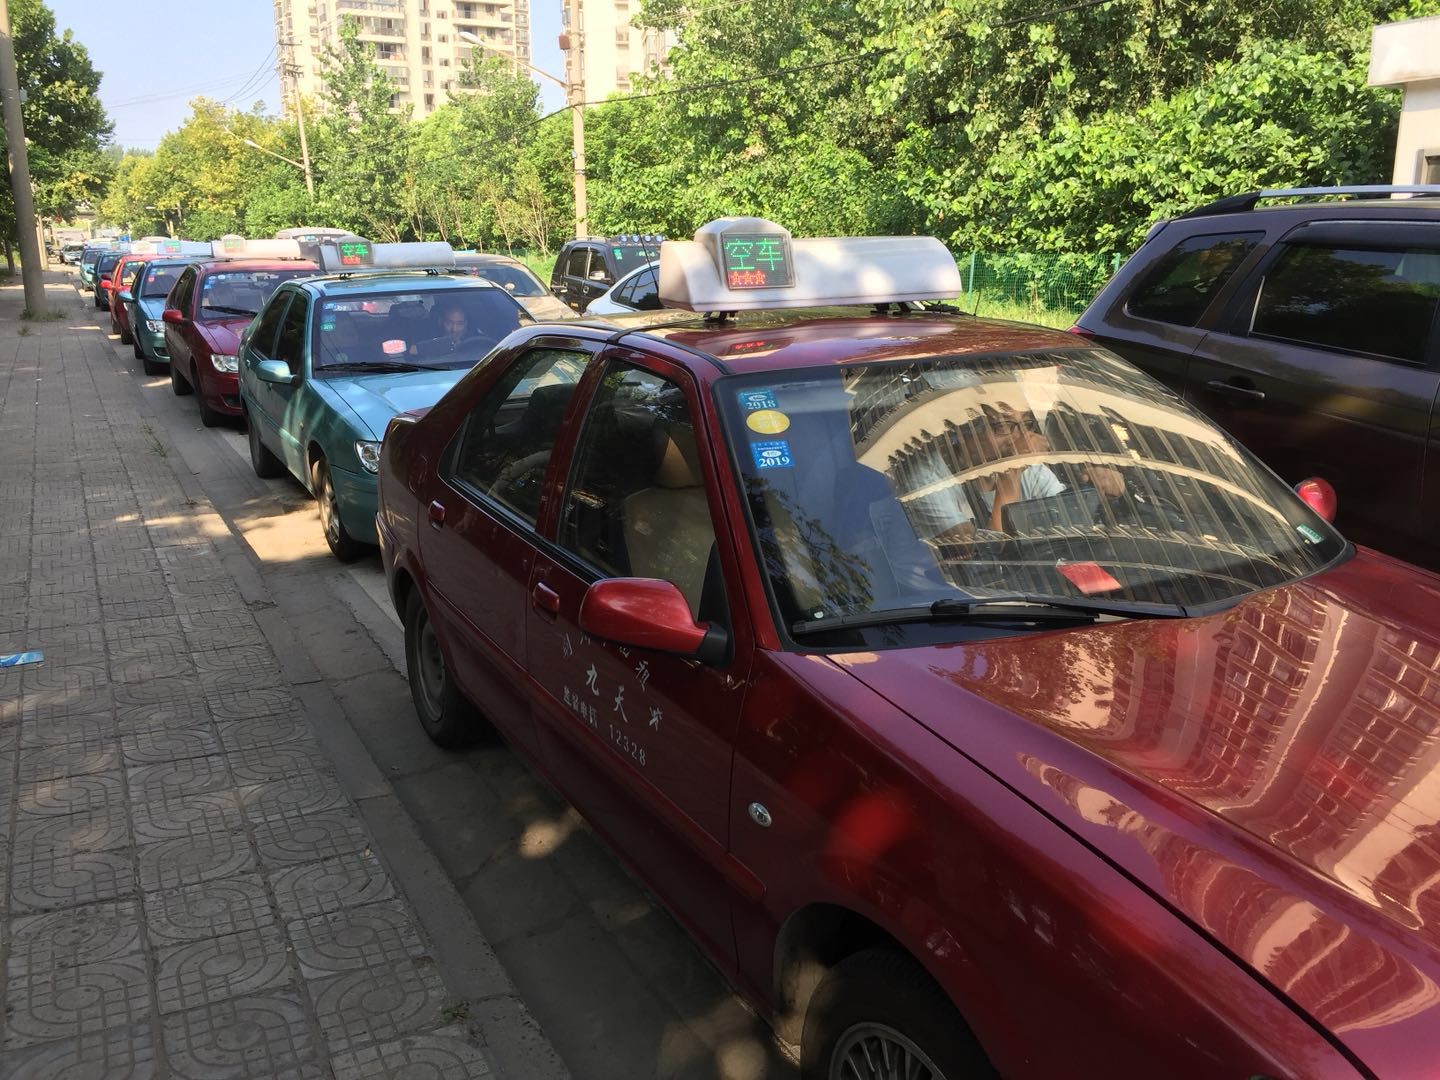 荆州市出租车集中年审为创文尽一份力